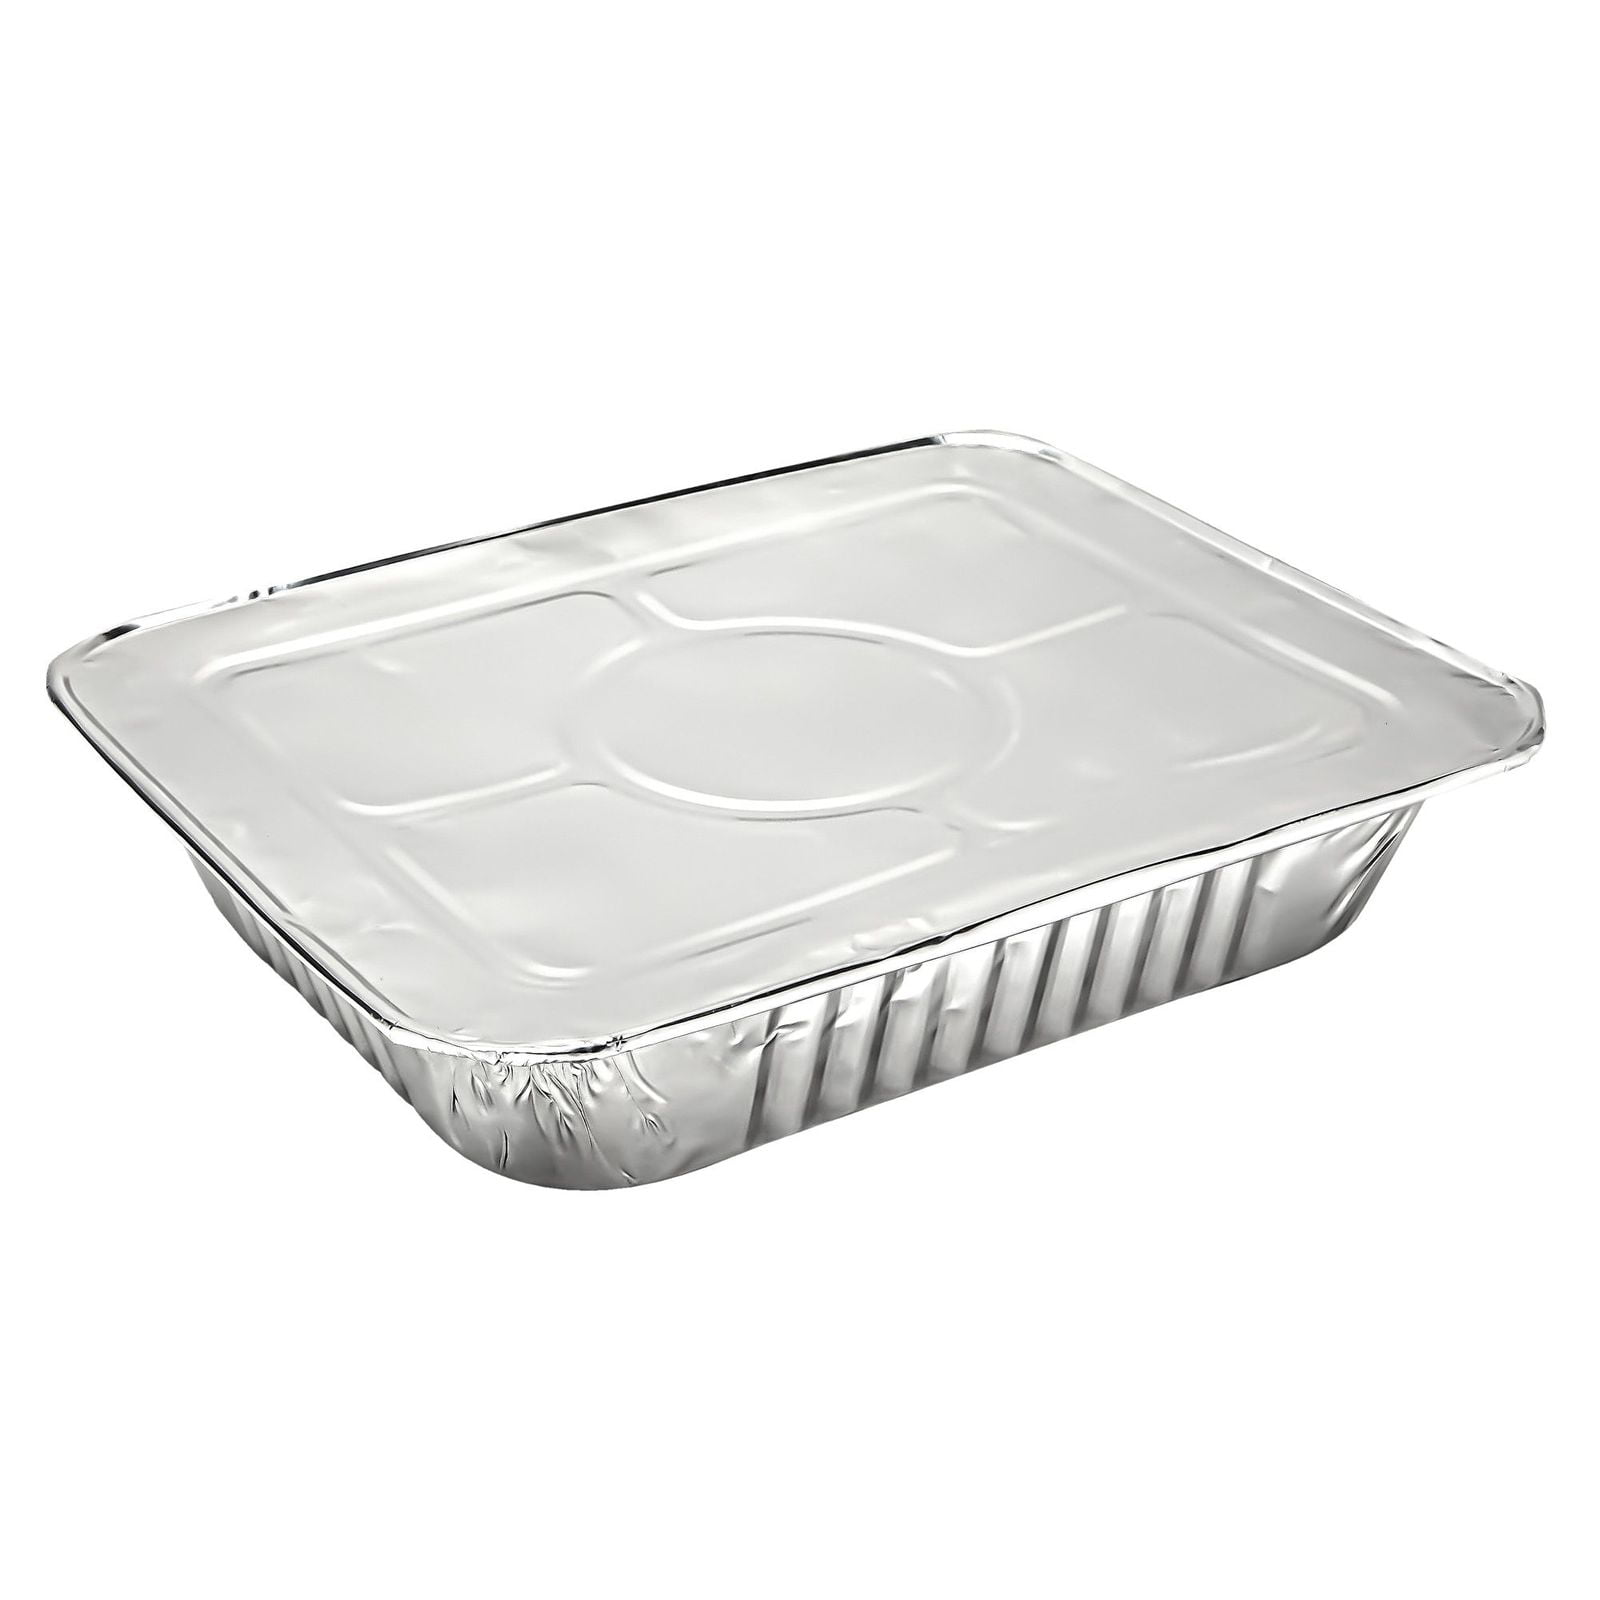 Aluminum Foil Pans 20-Piece Half-Size Deep Disposable Steam Table Pans with Lids 